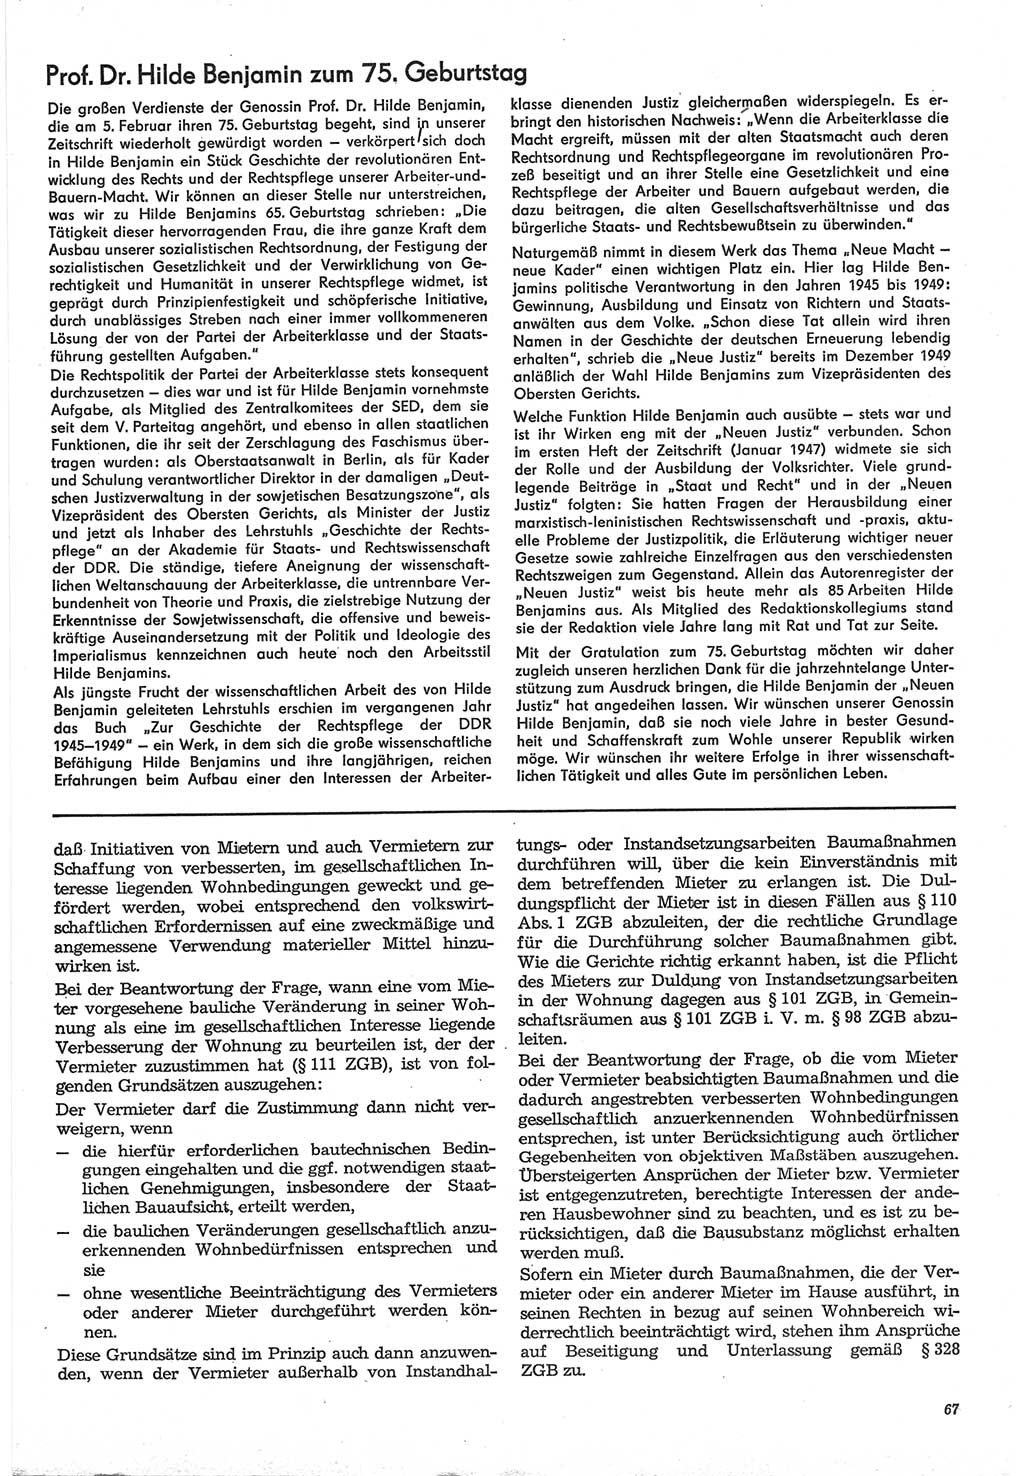 Neue Justiz (NJ), Zeitschrift für Recht und Rechtswissenschaft-Zeitschrift, sozialistisches Recht und Gesetzlichkeit, 31. Jahrgang 1977, Seite 67 (NJ DDR 1977, S. 67)